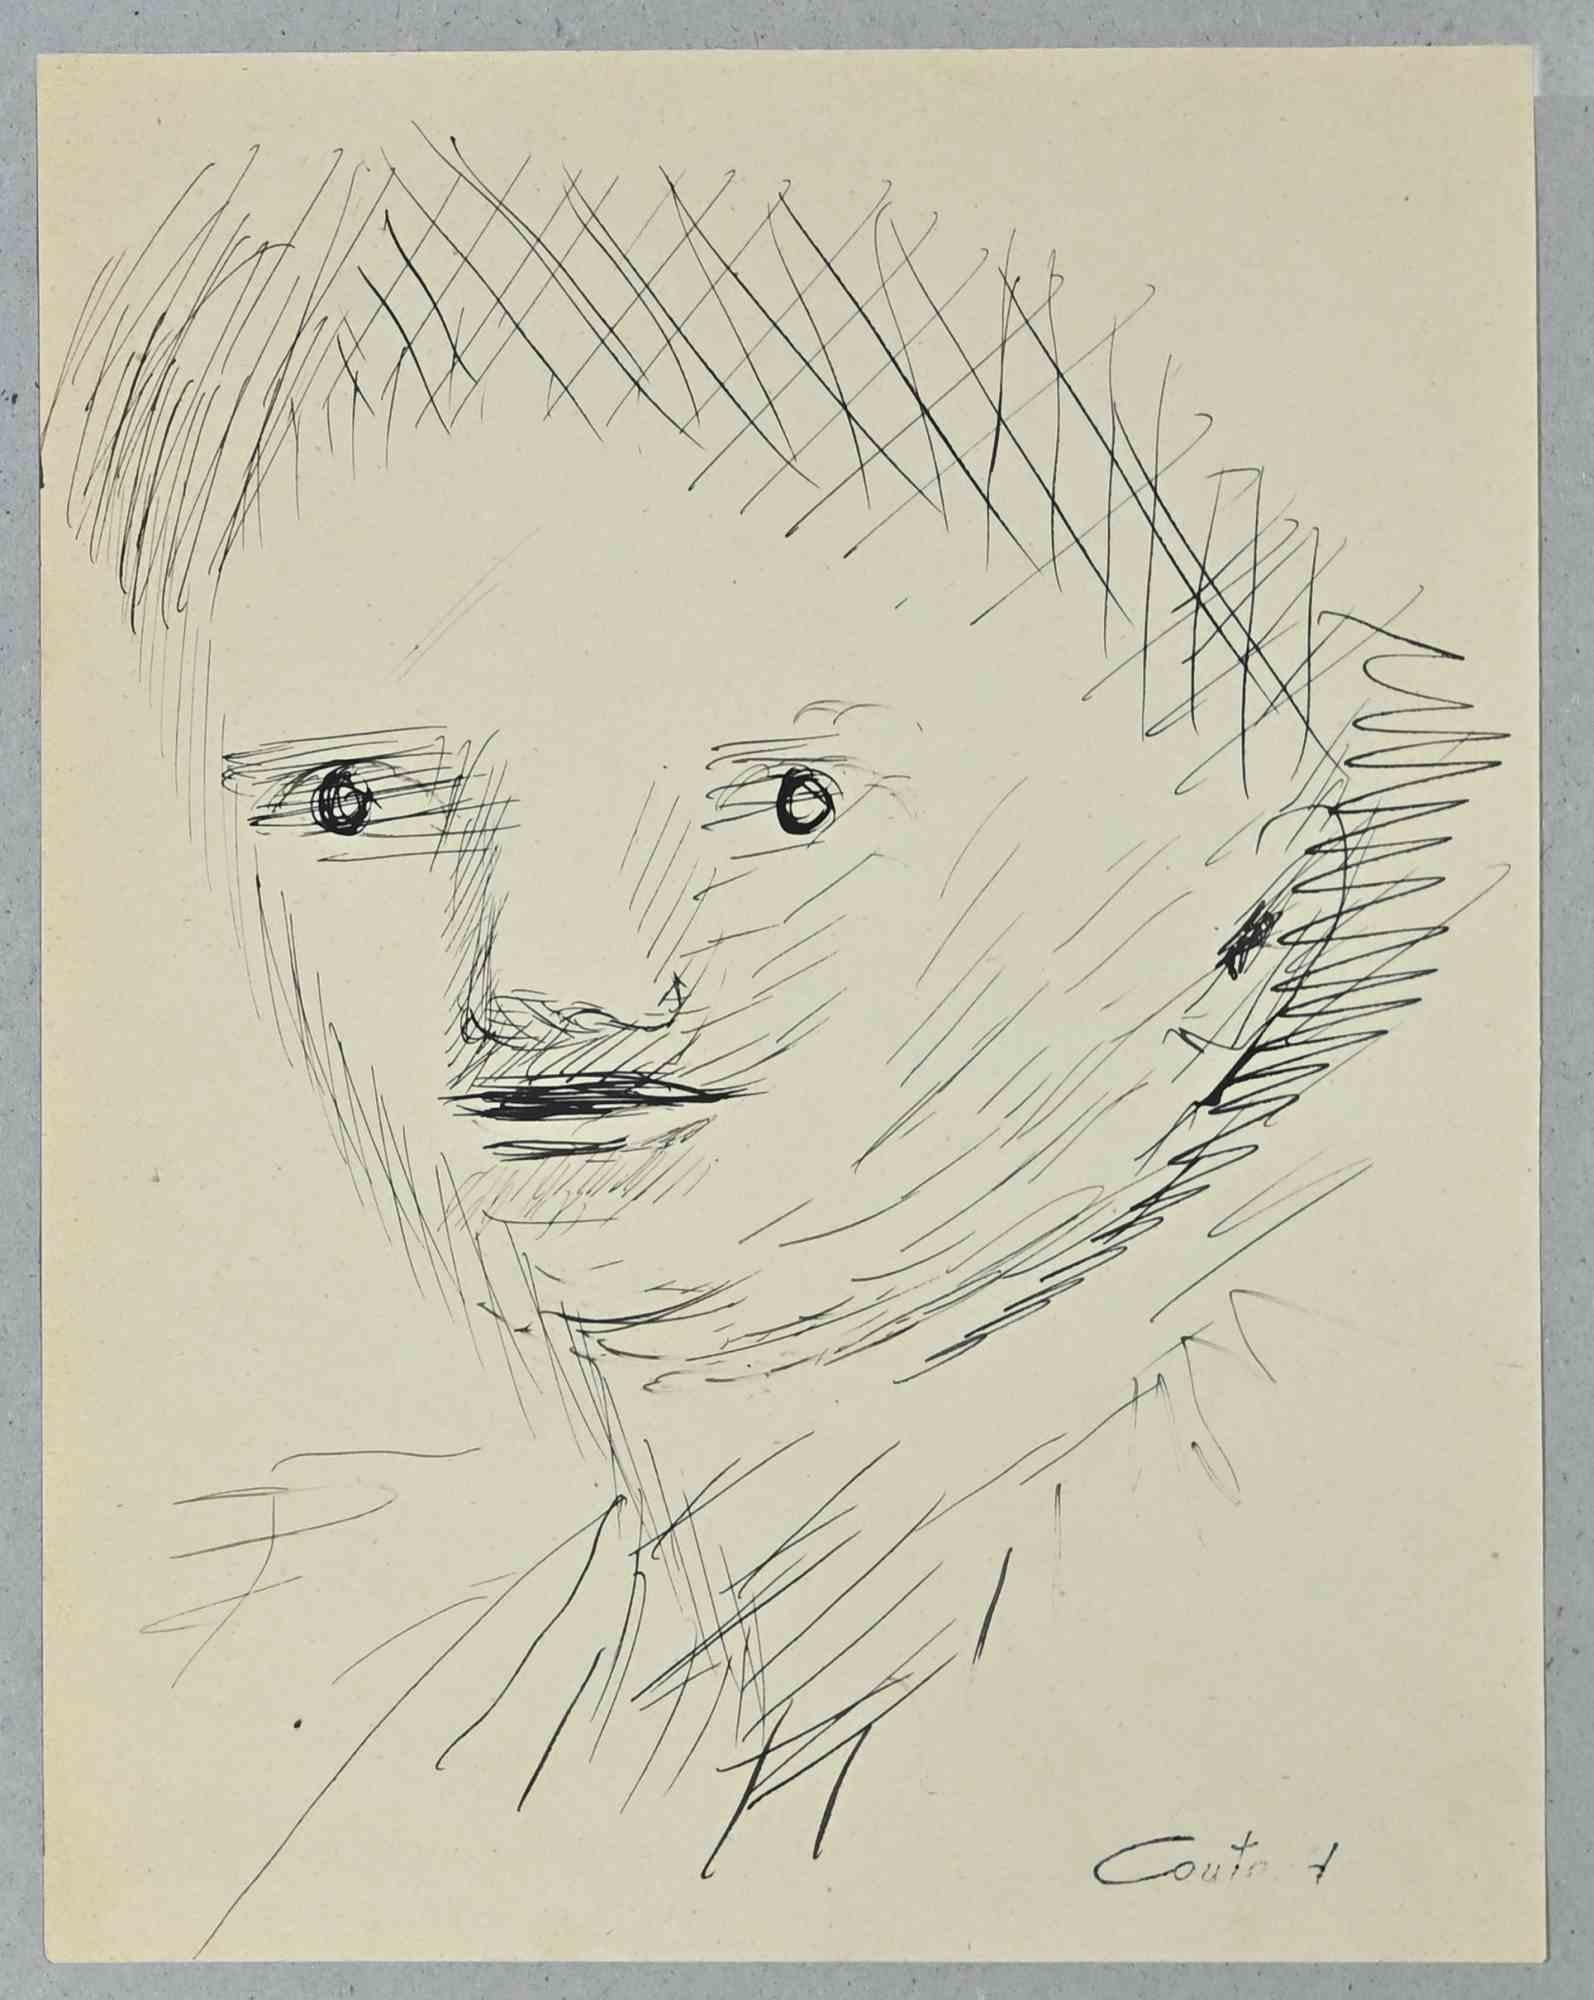 Portrait d'enfant est un dessin original à l'encre de Chine réalisé par Lucien Coutaud au milieu du 20e siècle.

Signé à la main.

Bonnes conditions.

Les traits délicats et dynamiques sont créés de manière harmonieuse.